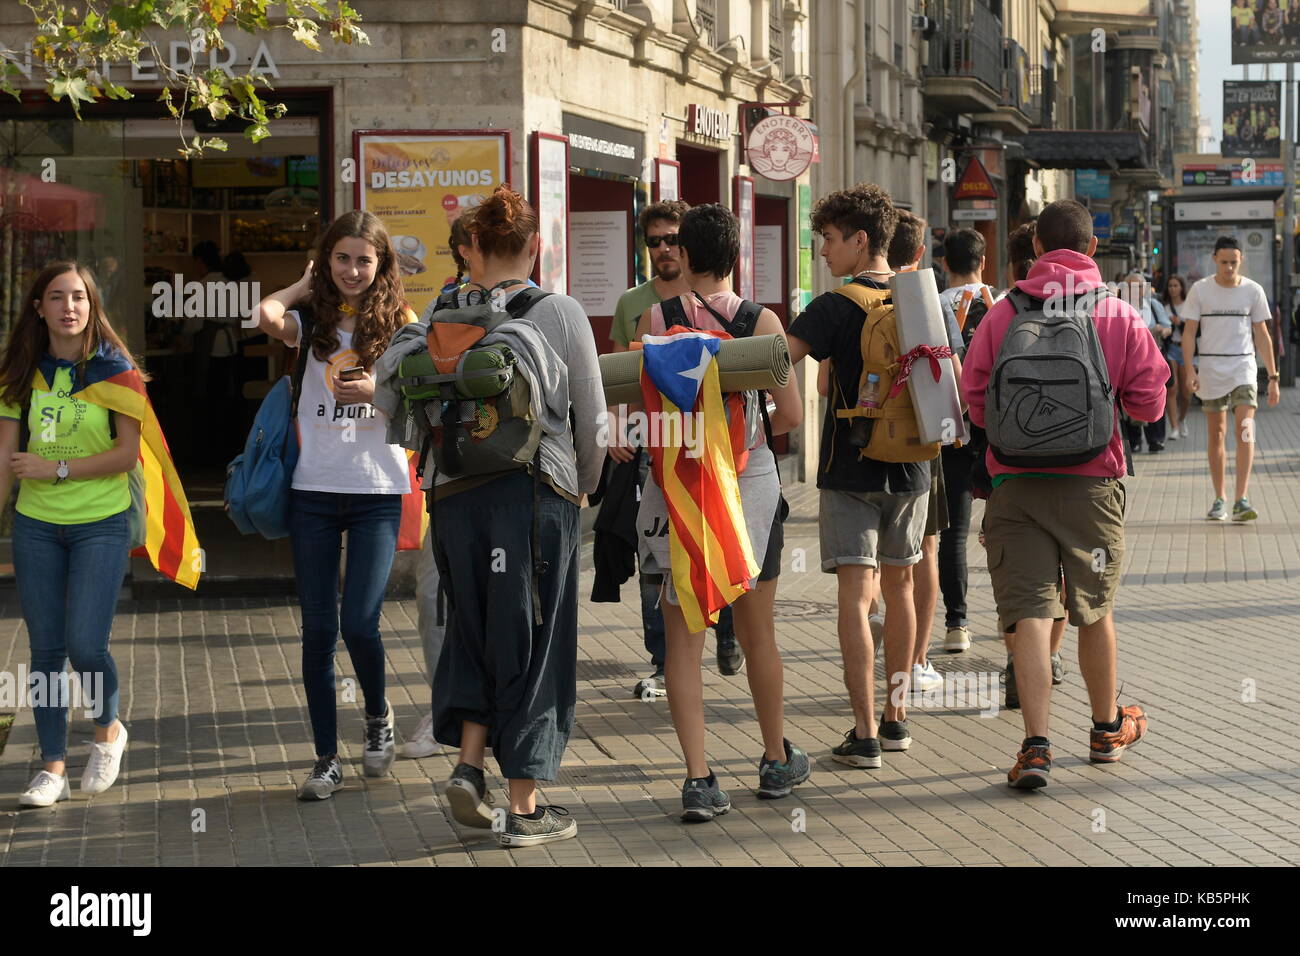 Barcelona, España. El 28 de septiembre de 2017. Los jóvenes de Barcelona con la bandera catalana en el camino a un rally. Crédito: Franz Perc / Alamy Live News Foto de stock